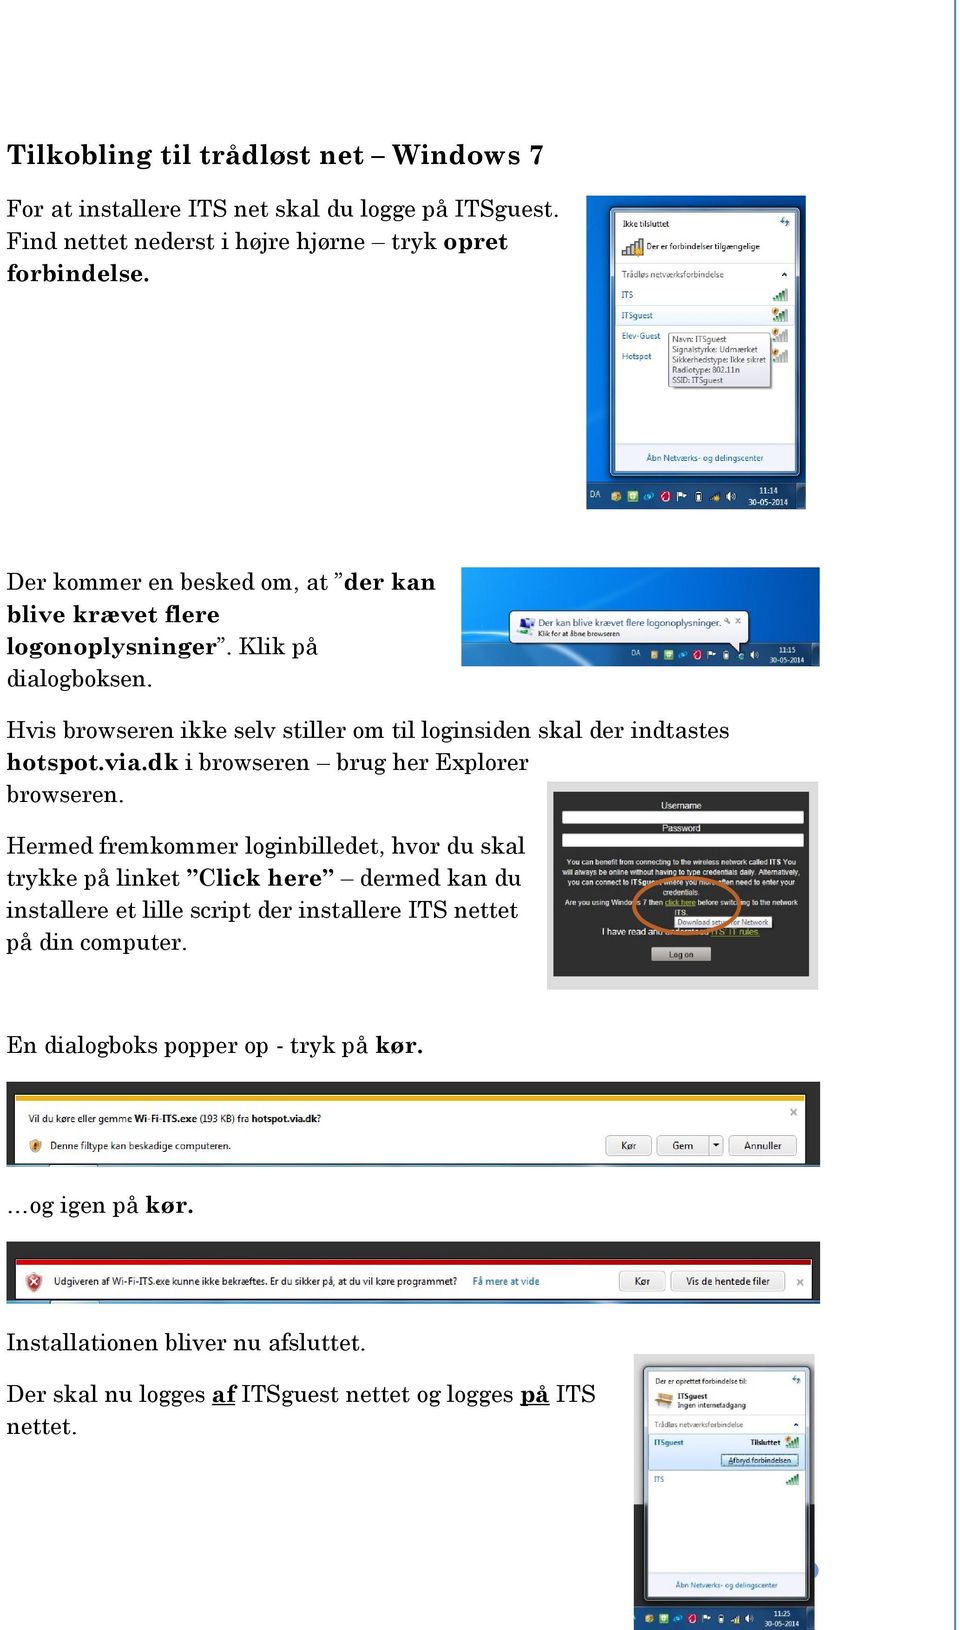 Hvis browseren ikke selv stiller om til loginsiden skal der indtastes hotspot.via.dk i browseren brug her Explorer browseren.